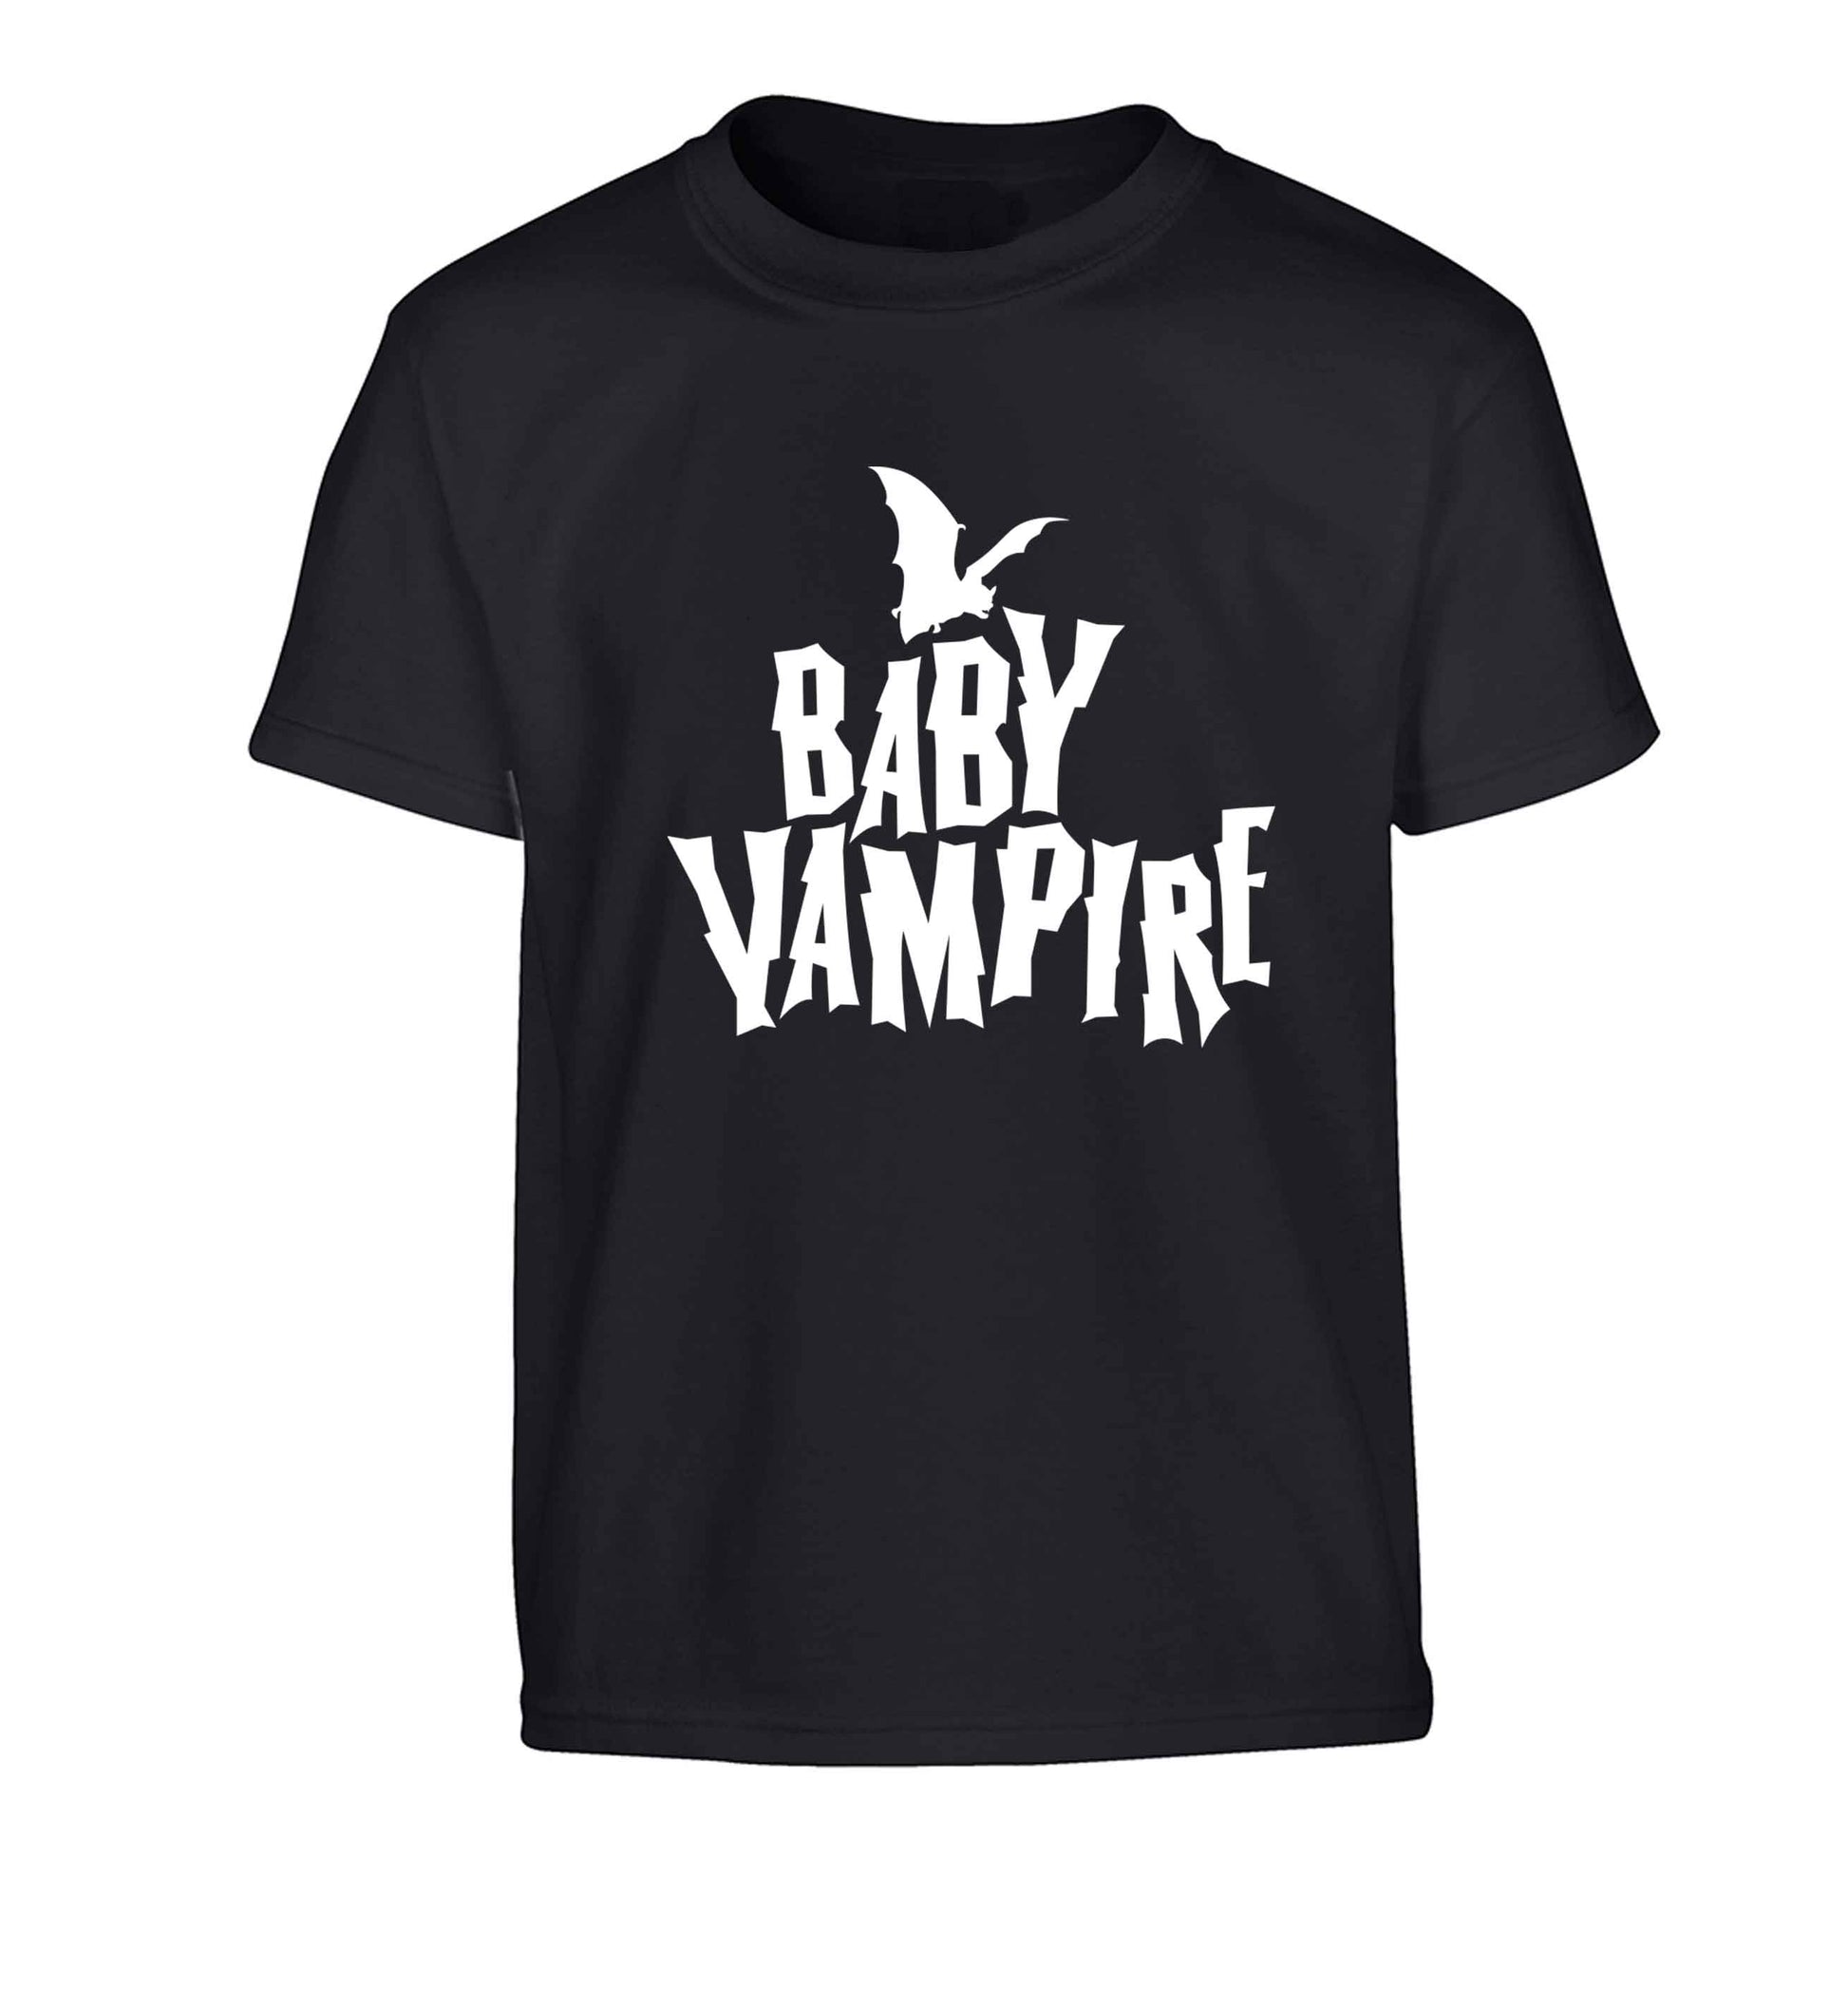 Baby vampire Children's black Tshirt 12-13 Years